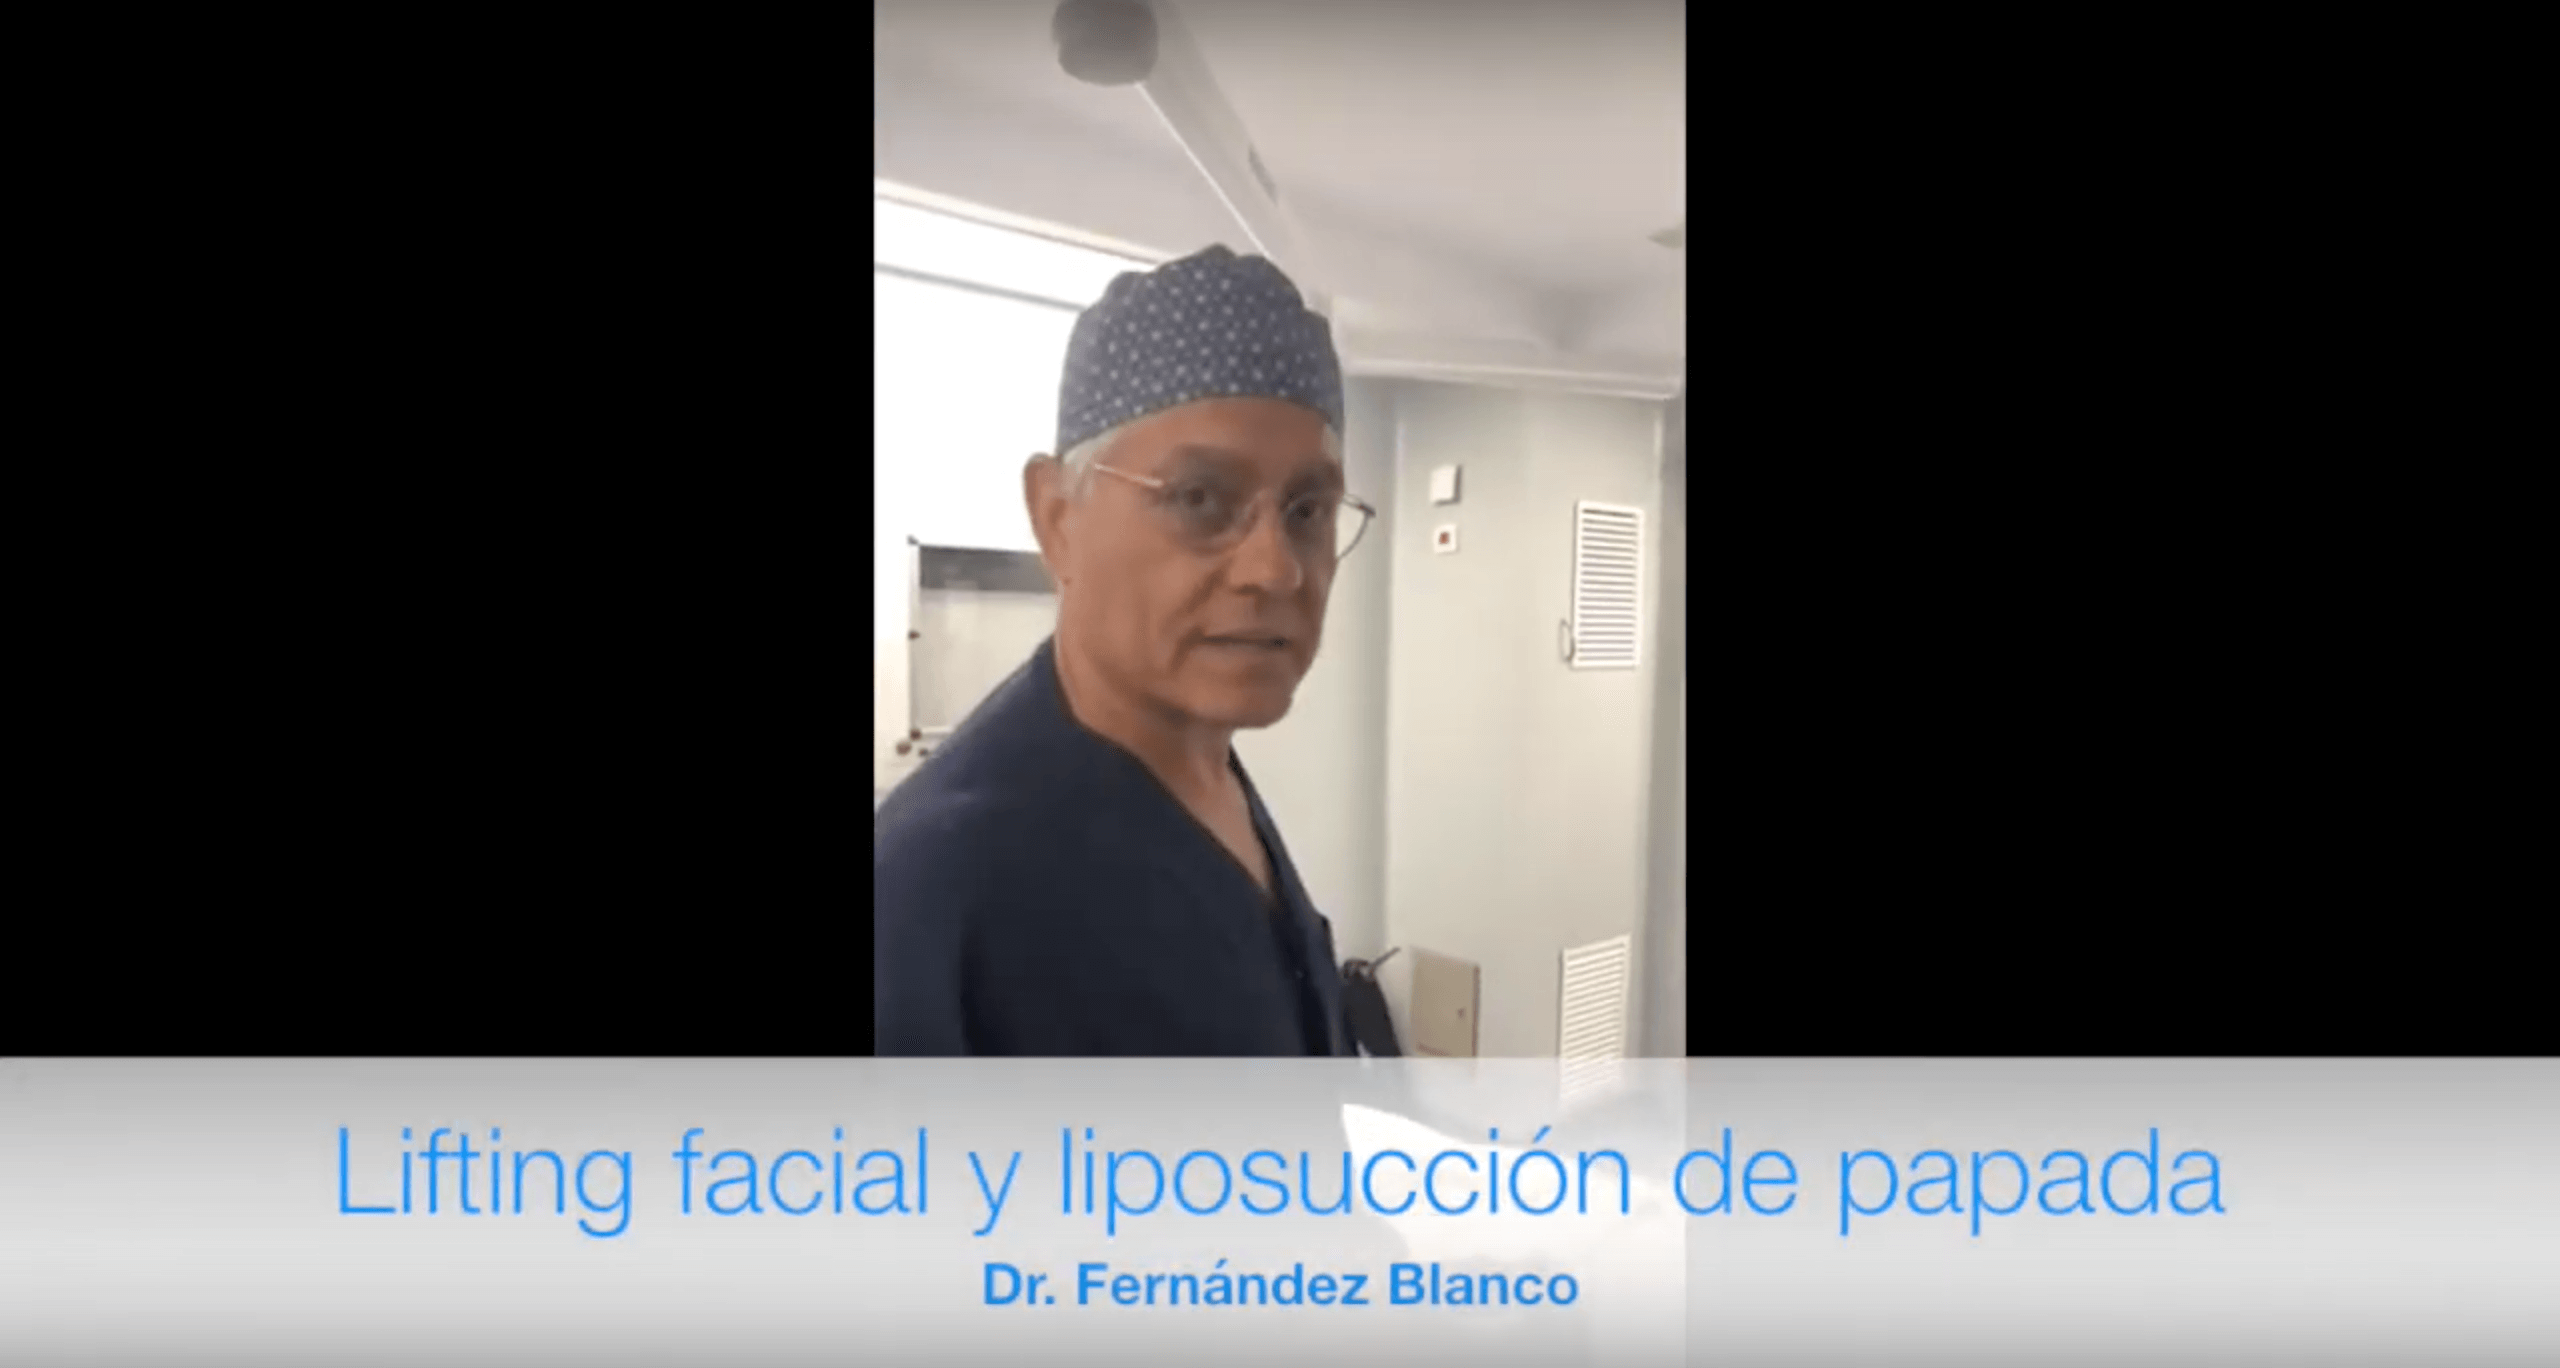 Nuestro doctor Fernández Blanco nos muestra cómo luce una paciente de lifting y liposucción de papada al día siguiente de la cirugía